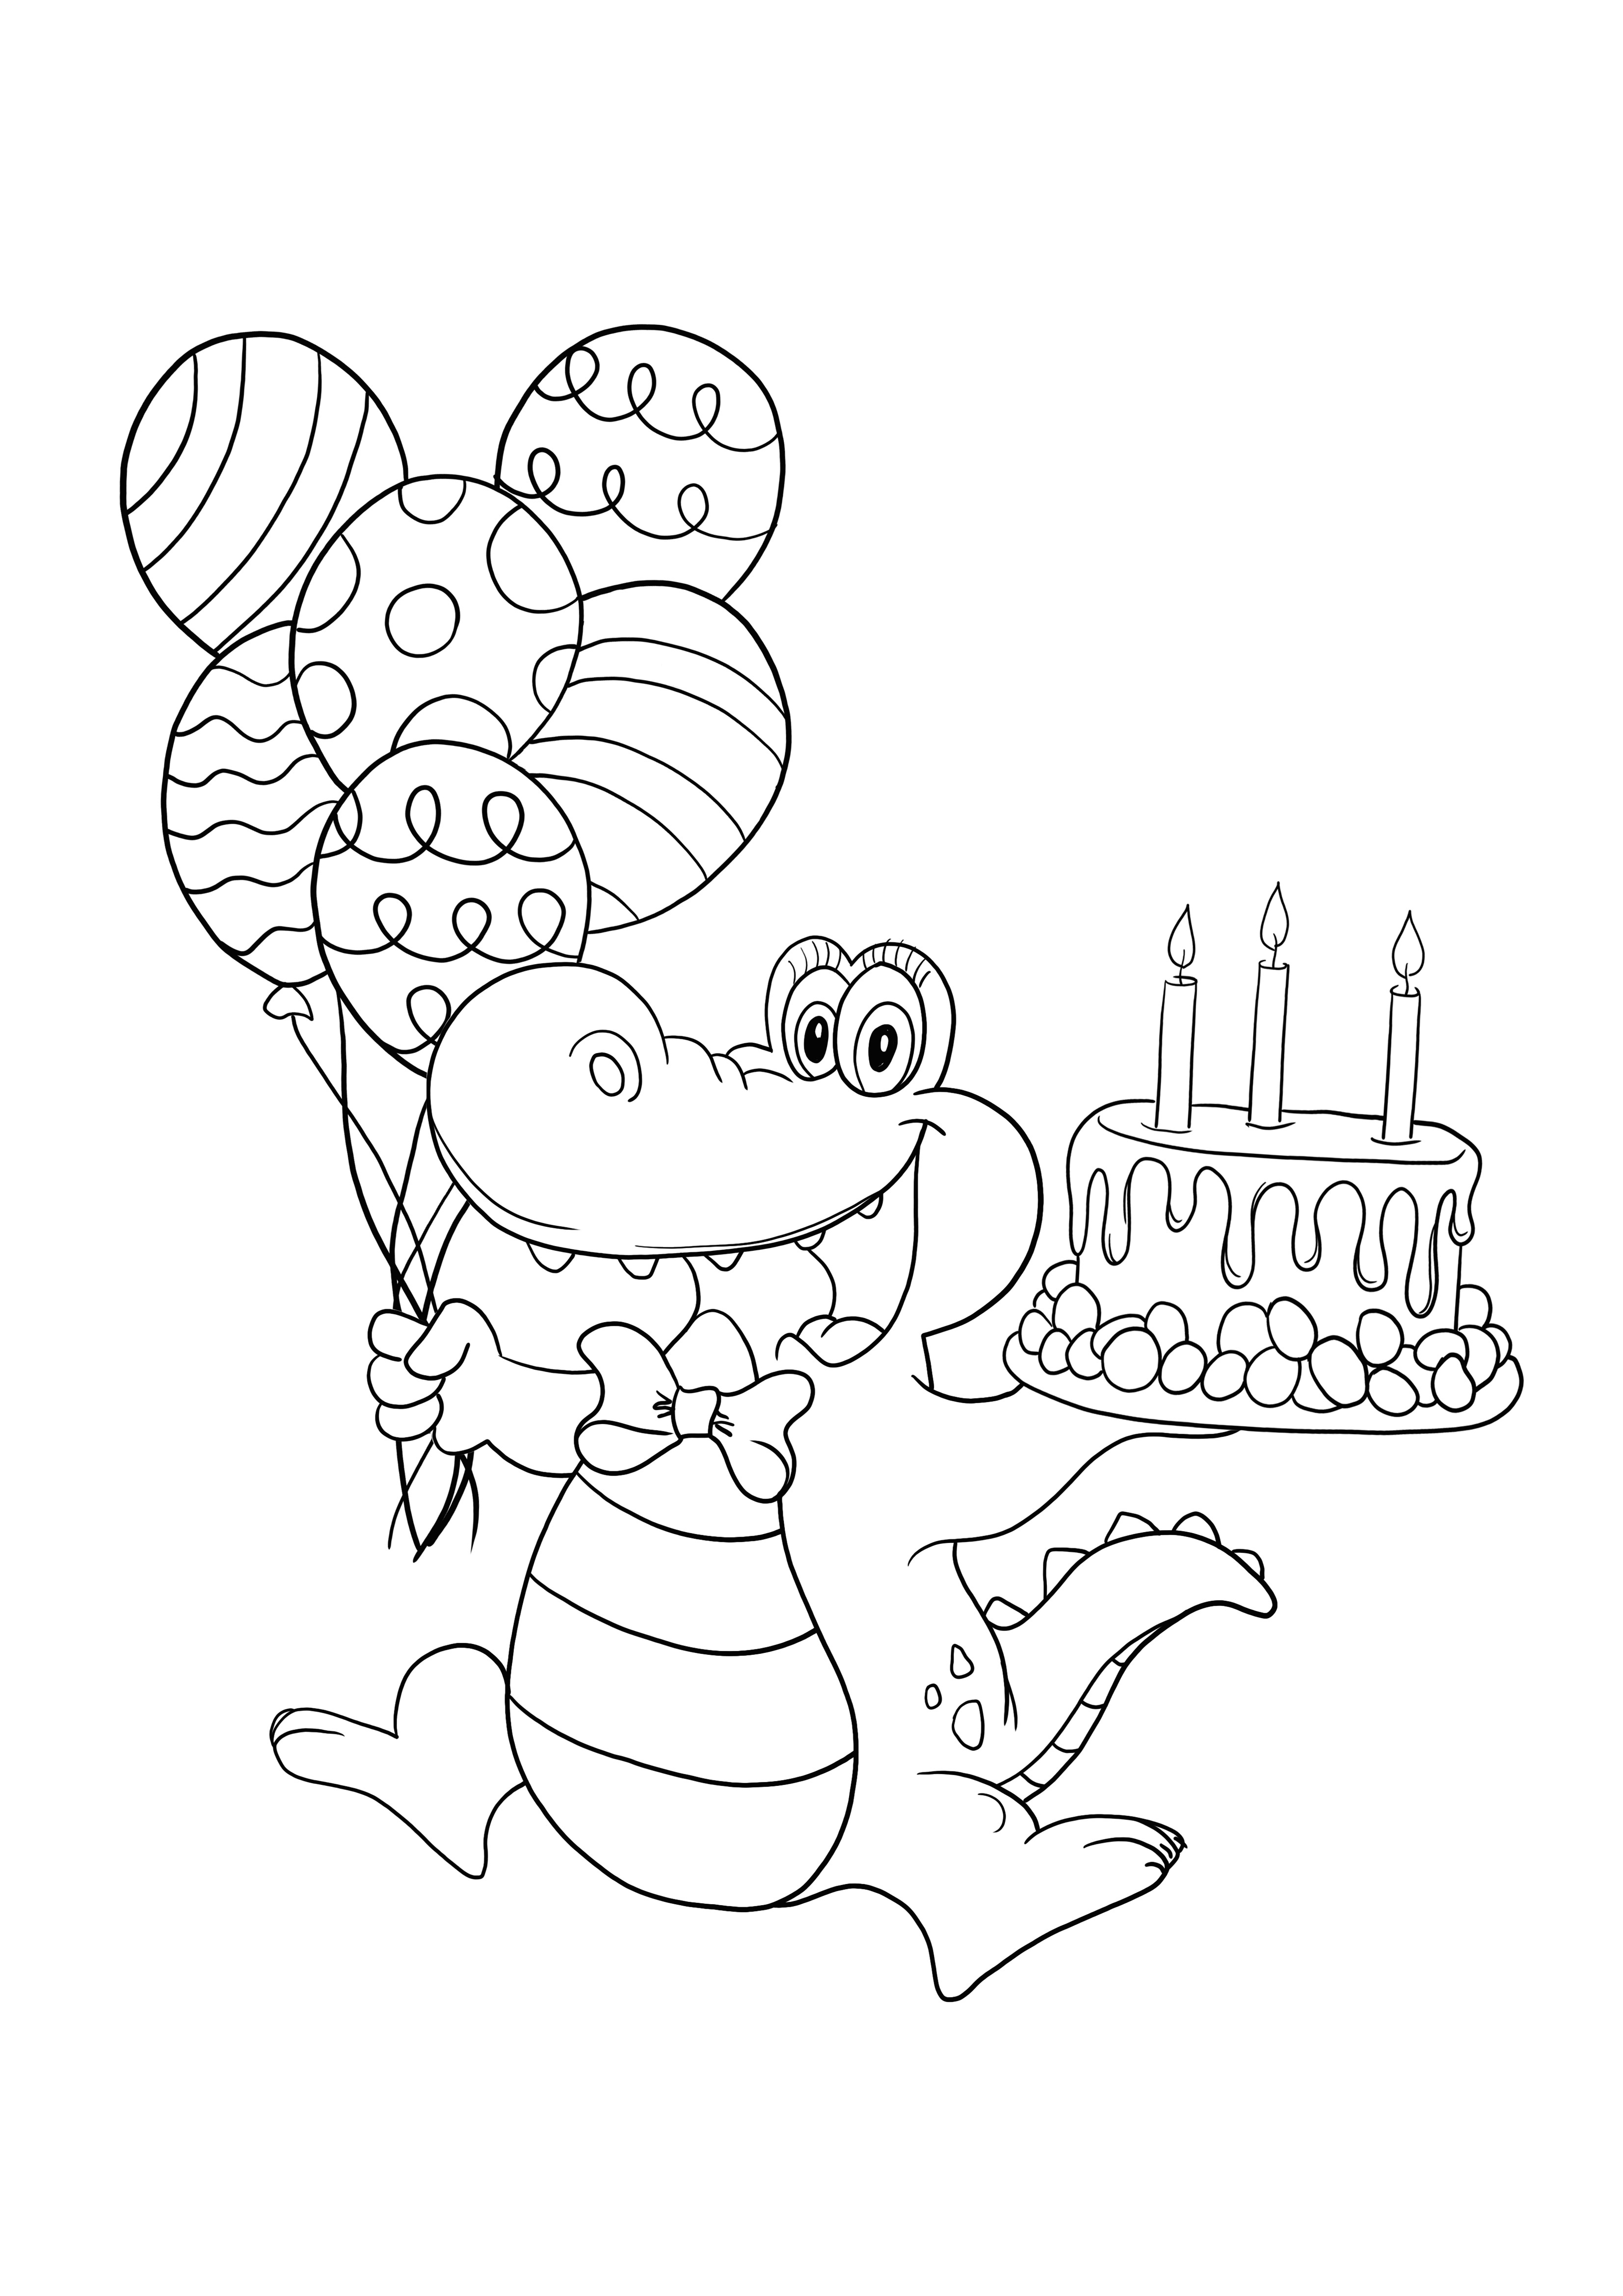 Alles Gute zum Geburtstag Krokodil zum kostenlosen Ausdrucken und Ausmalen